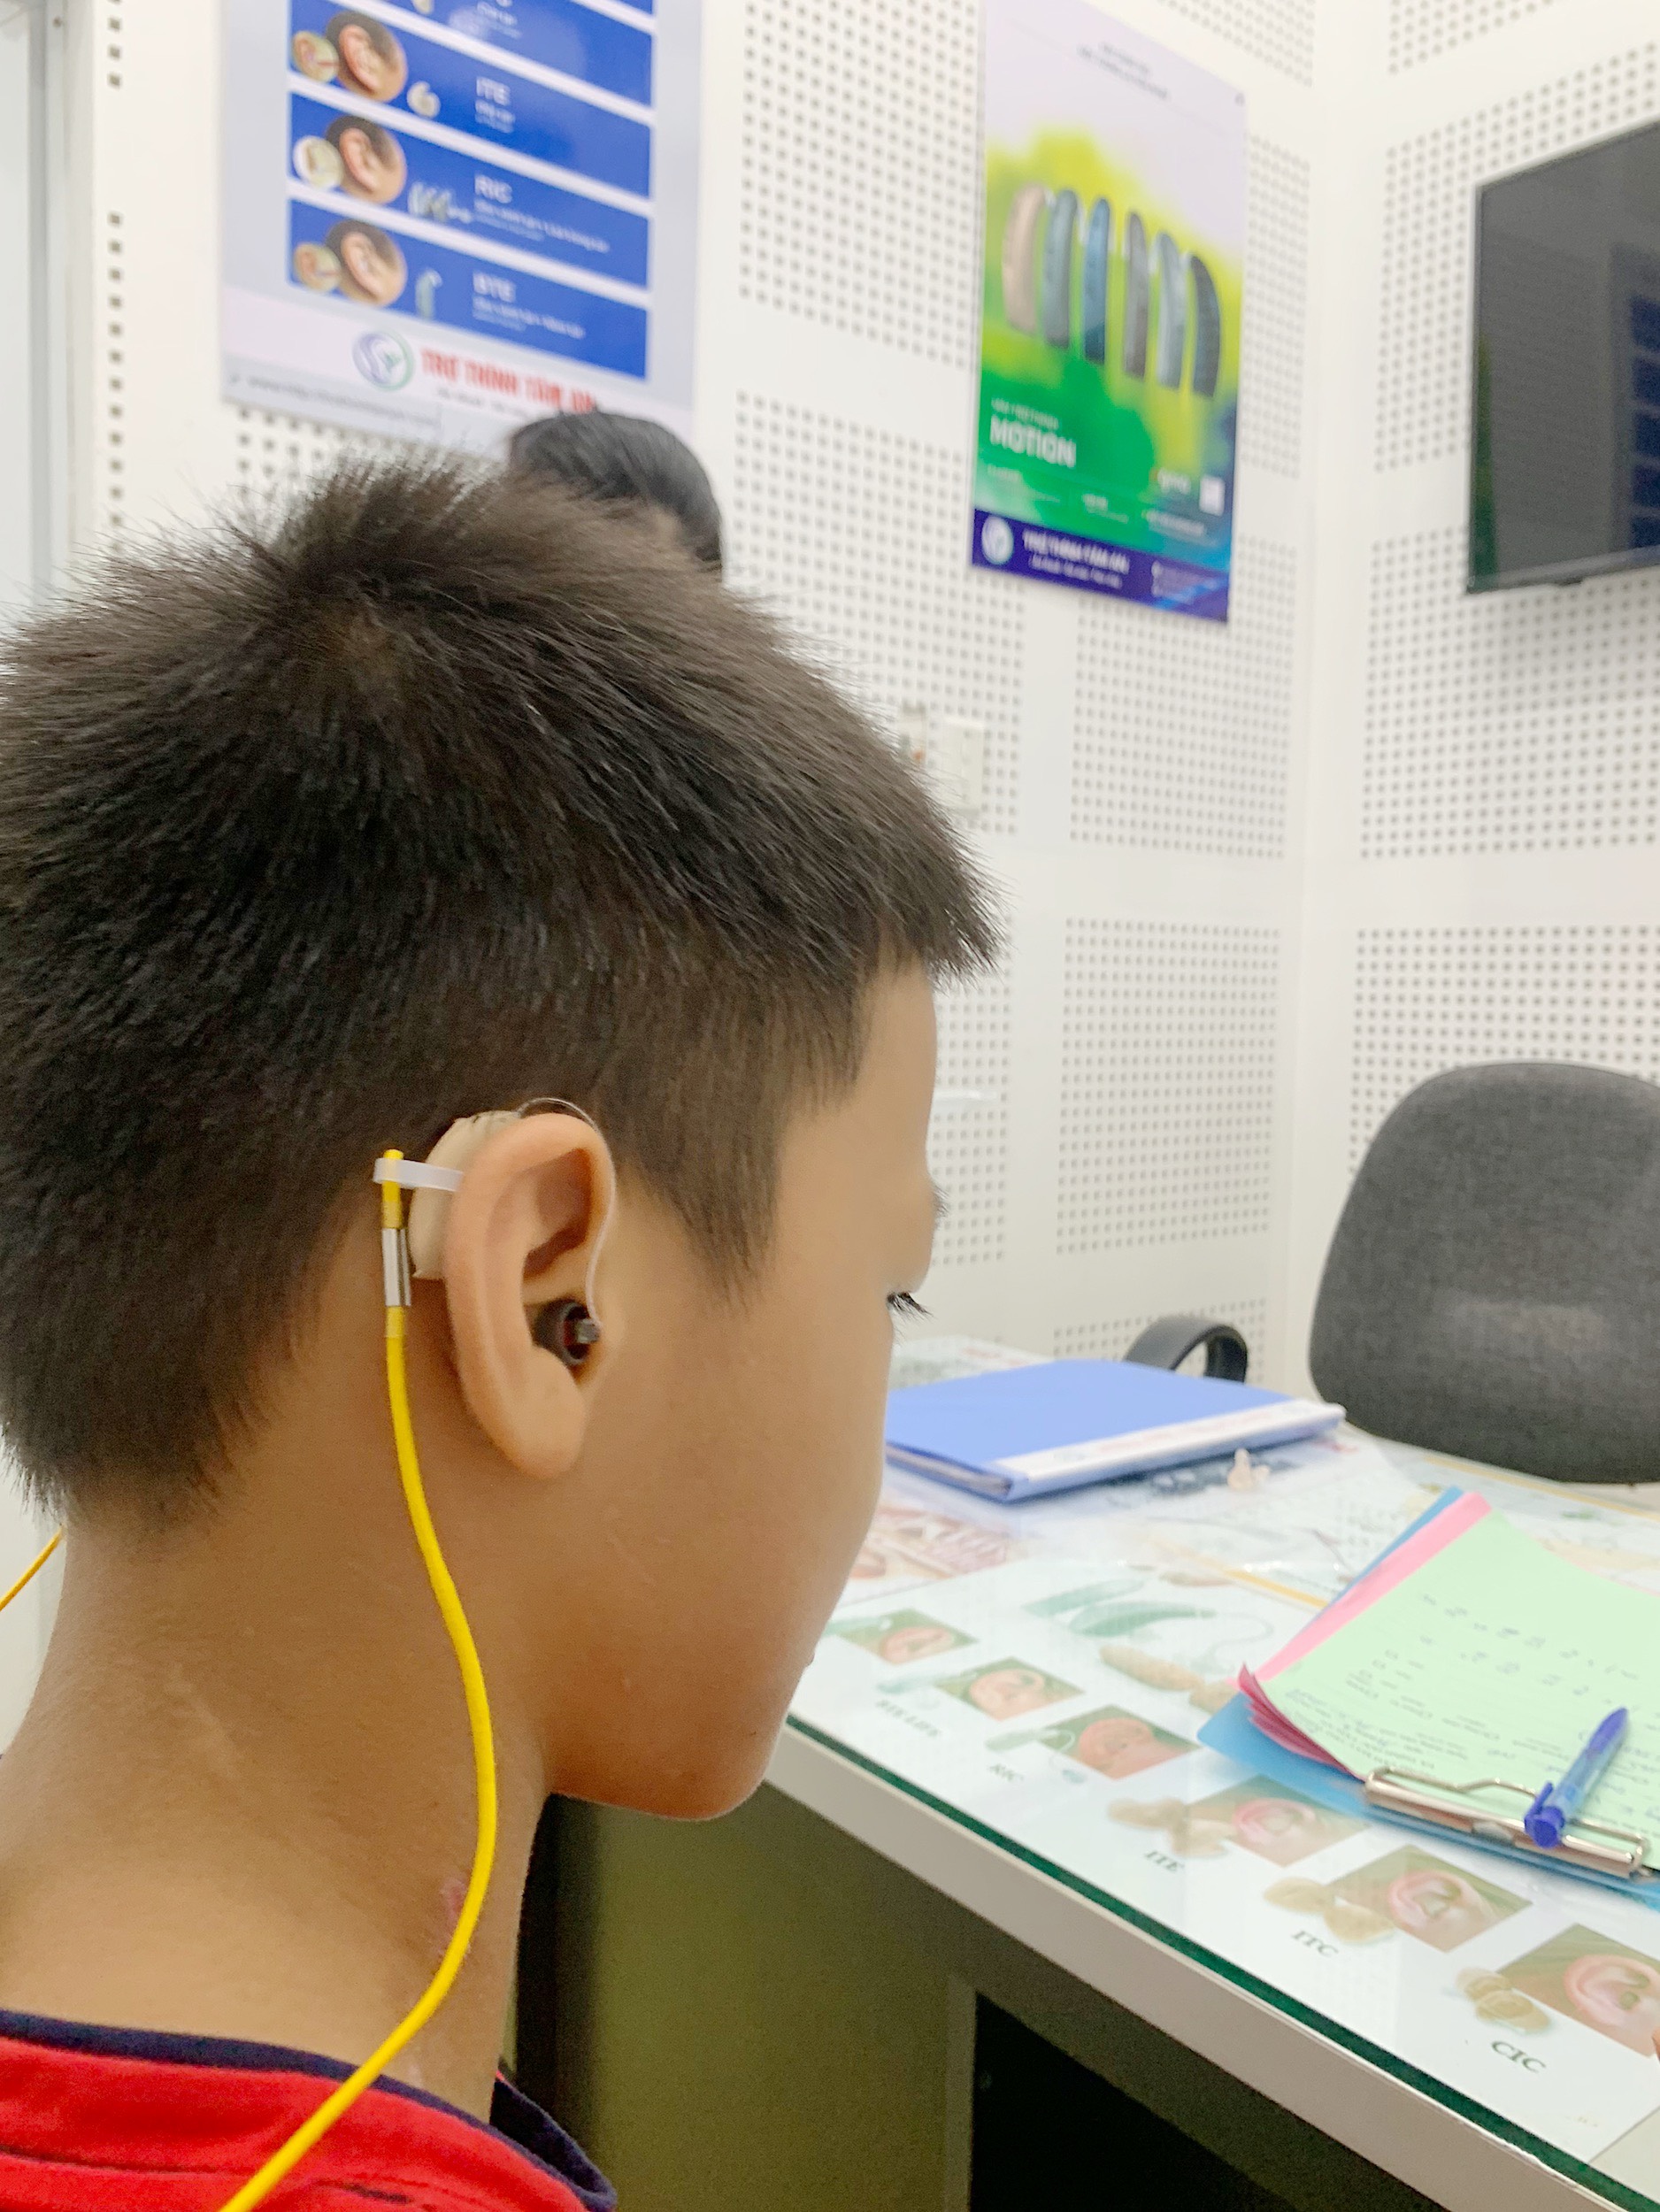 Nên lựa chọn máy trợ thính cho trẻ như thế nào